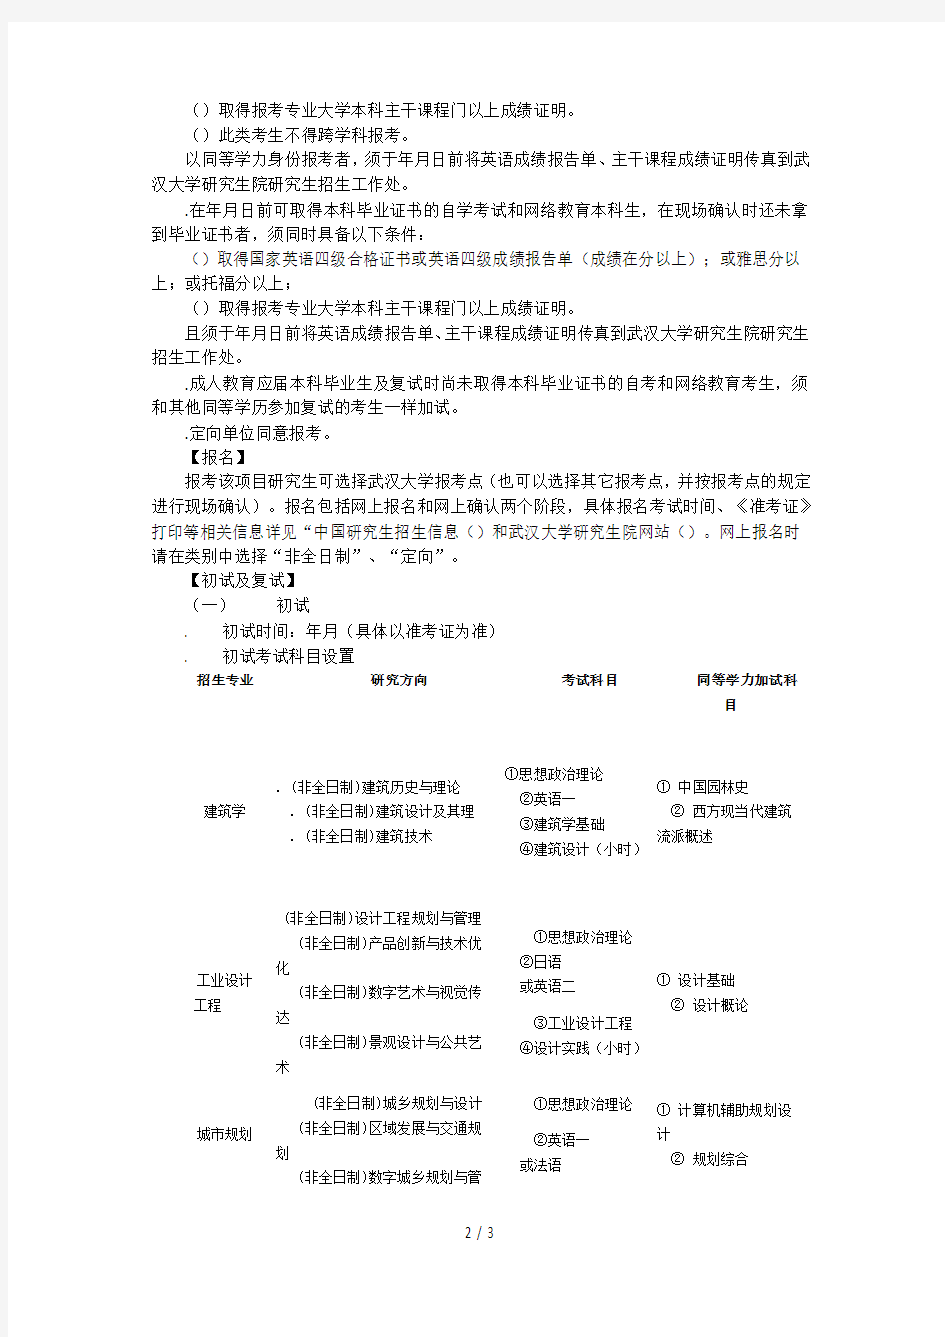 武汉大学城市设计学院2019年非全日制硕士招生简章